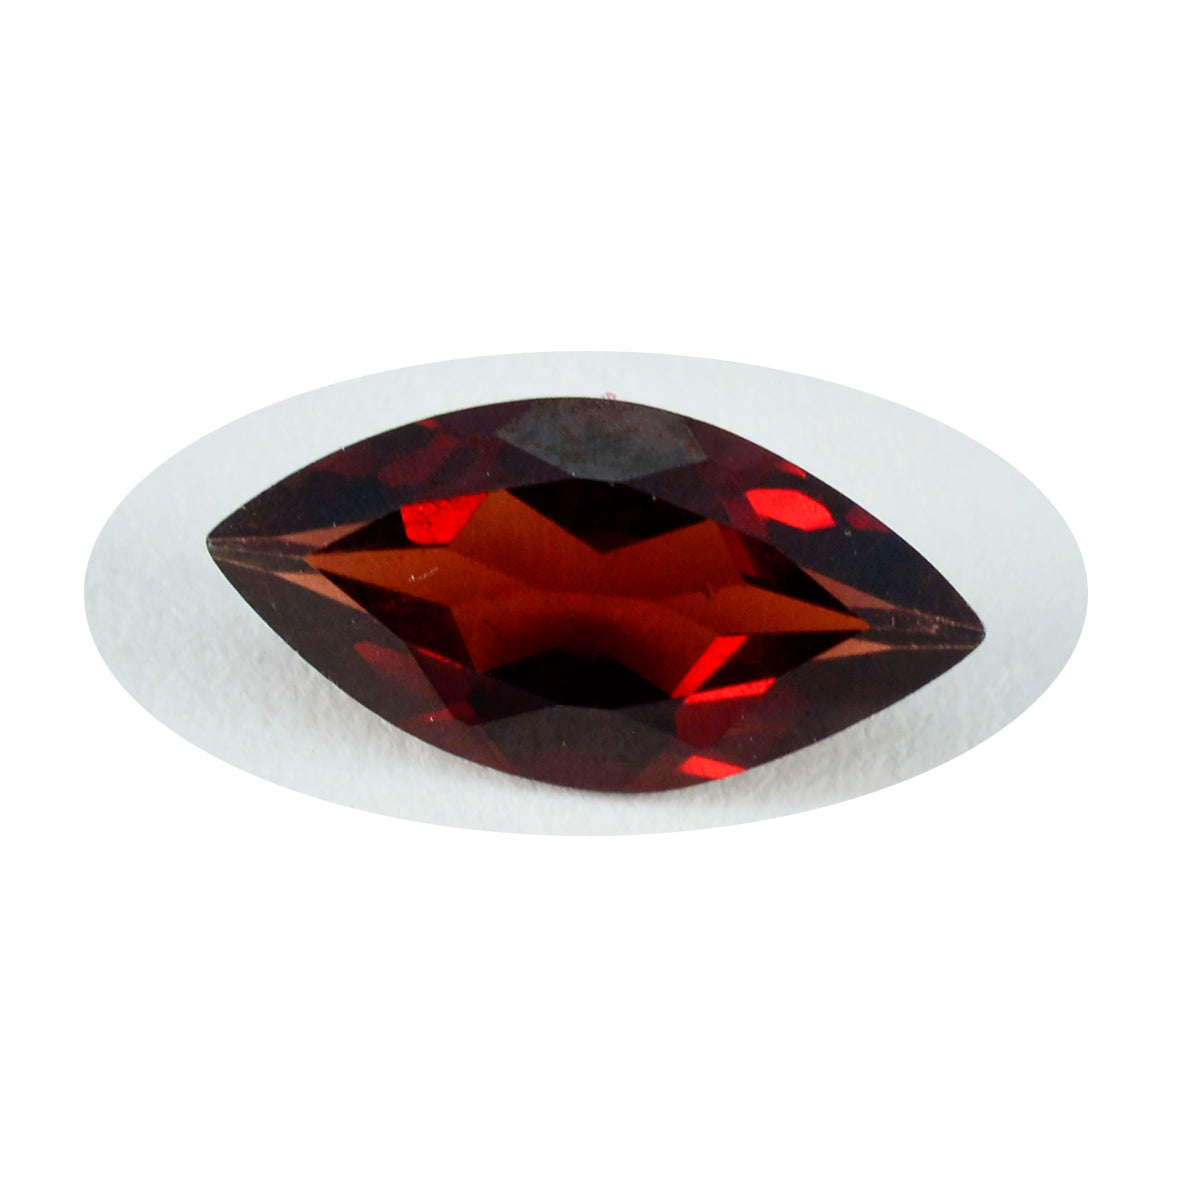 Riyogems – grenat rouge véritable à facettes, 10x20mm, forme marquise, qualité aa, pierres précieuses en vrac, 1 pièce